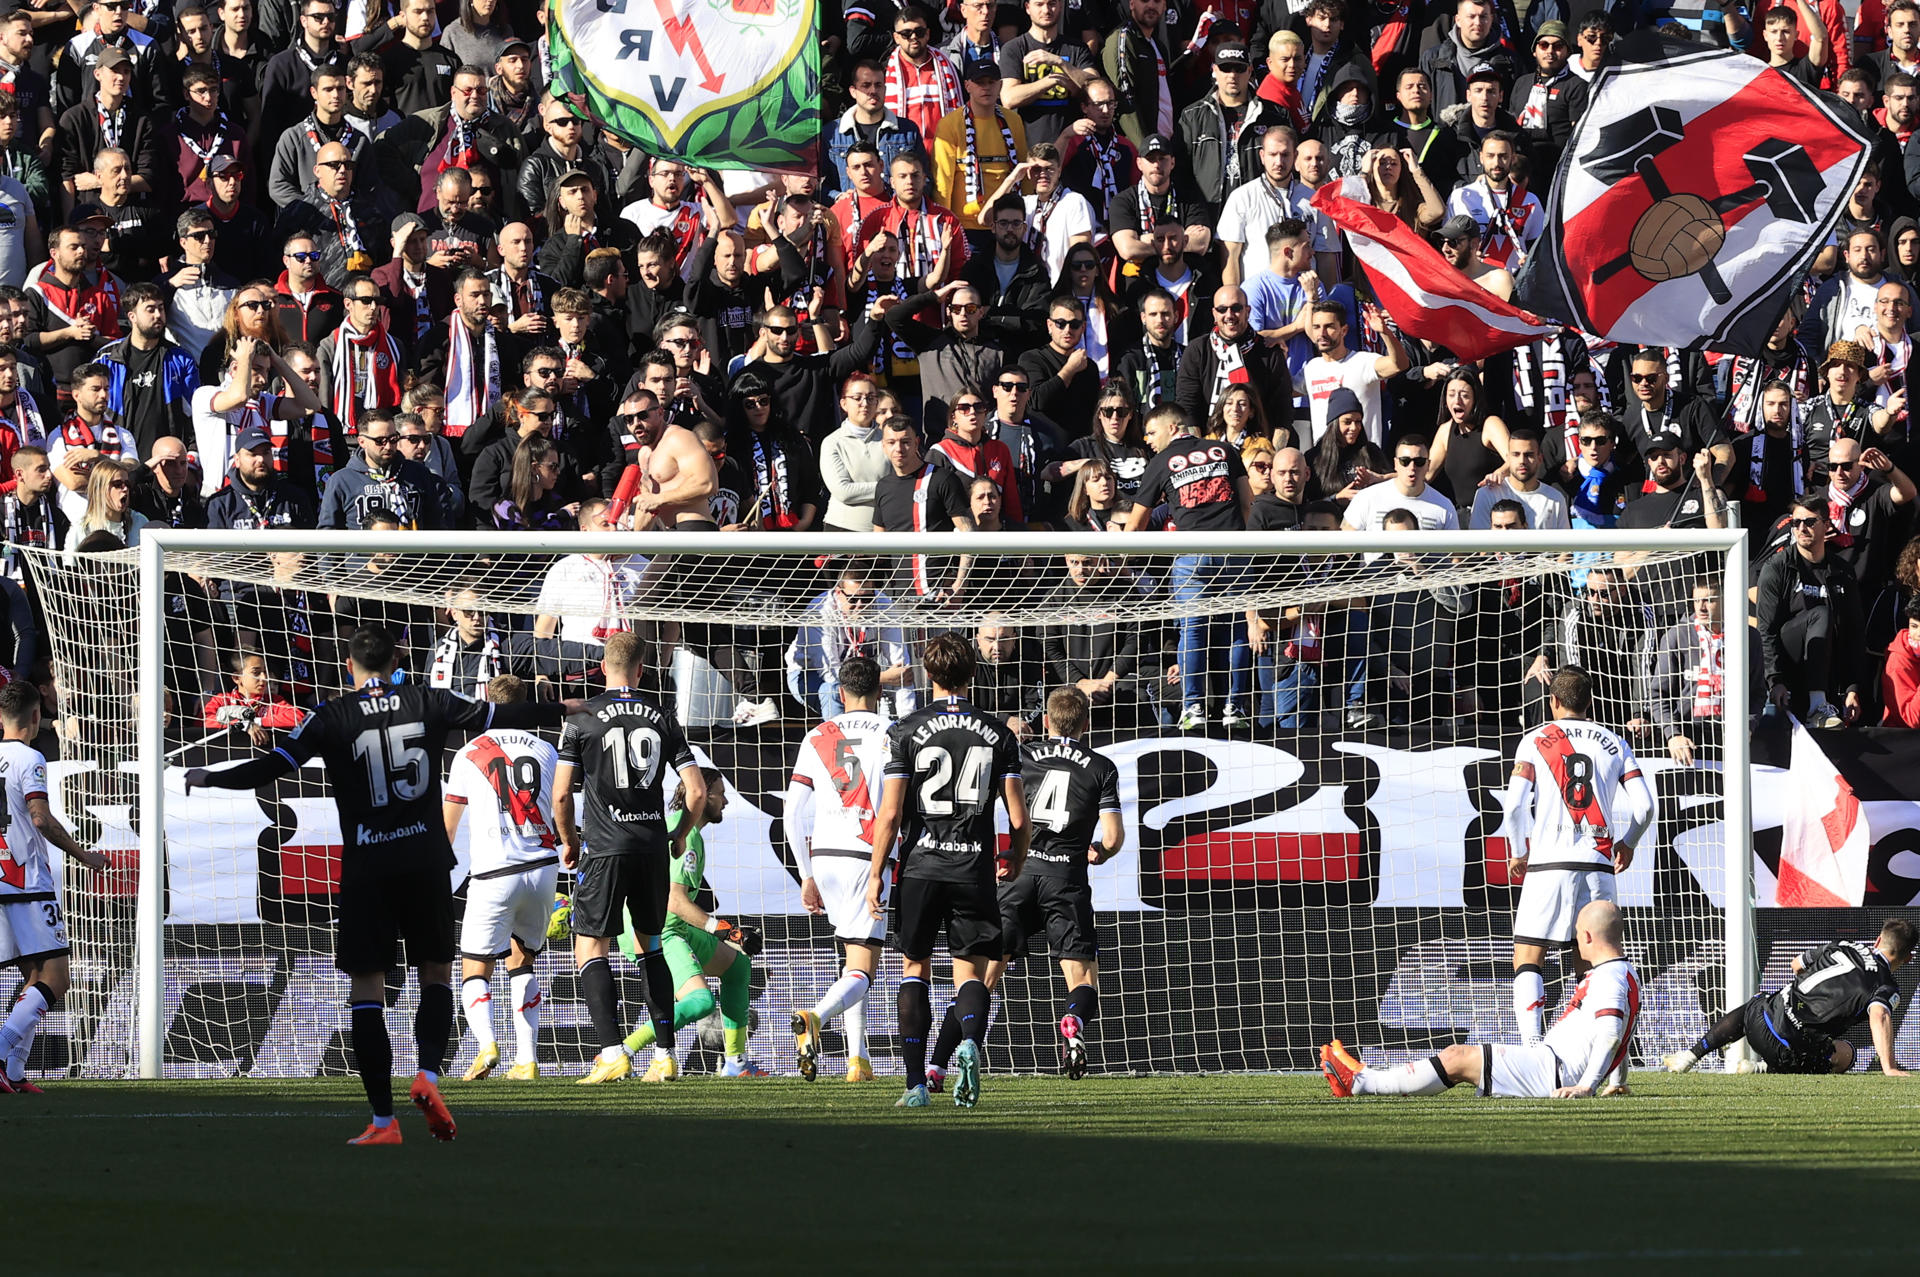 El delantero de la Real Sociedad Ander Barrenetxea (d) marca el segundo gol para su equipo durante el partido de jornada 18 de LaLiga disputado este sábado en el Estadio de Vallecas. EFE/Zipi